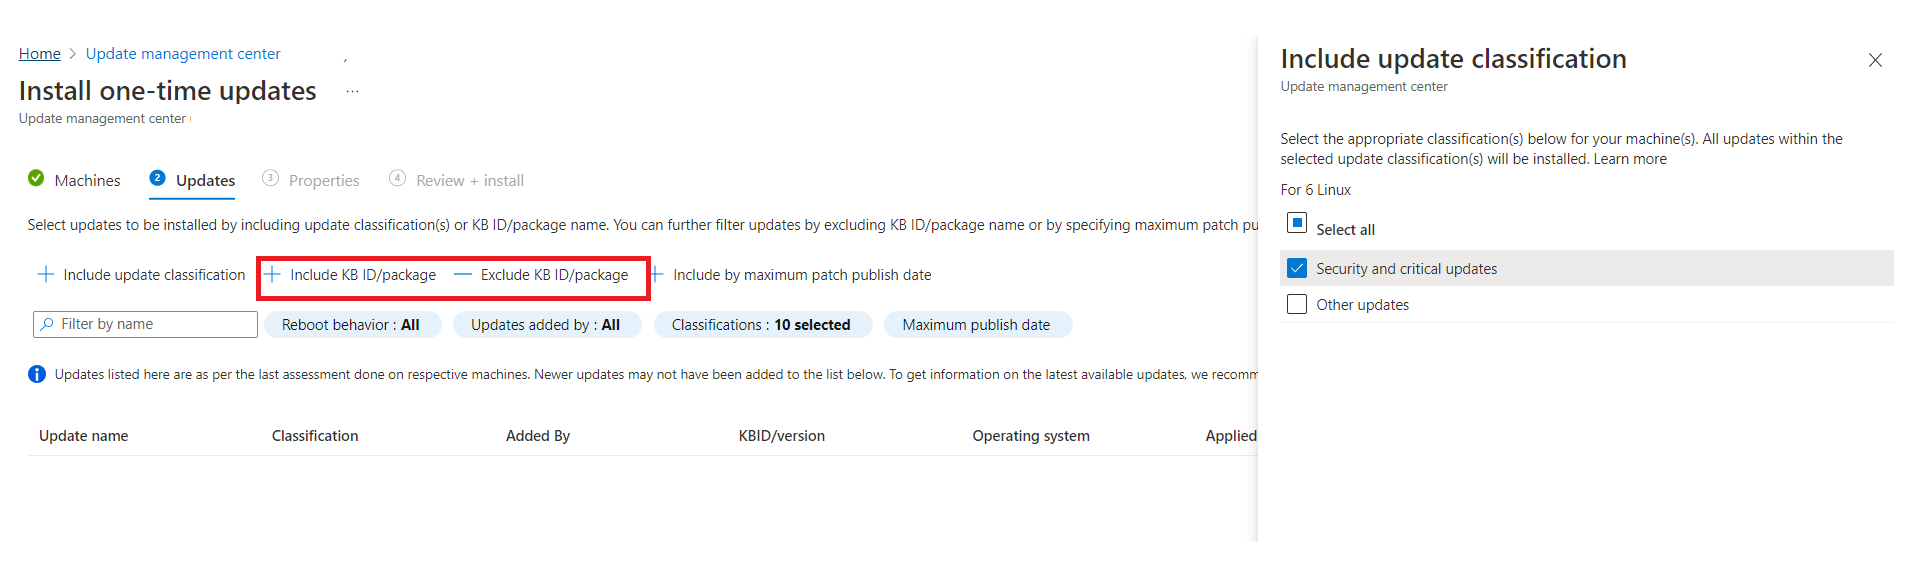 Captura de pantalla que muestra el cambio de los criterios de selección de actualización de la configuración de mantenimiento.